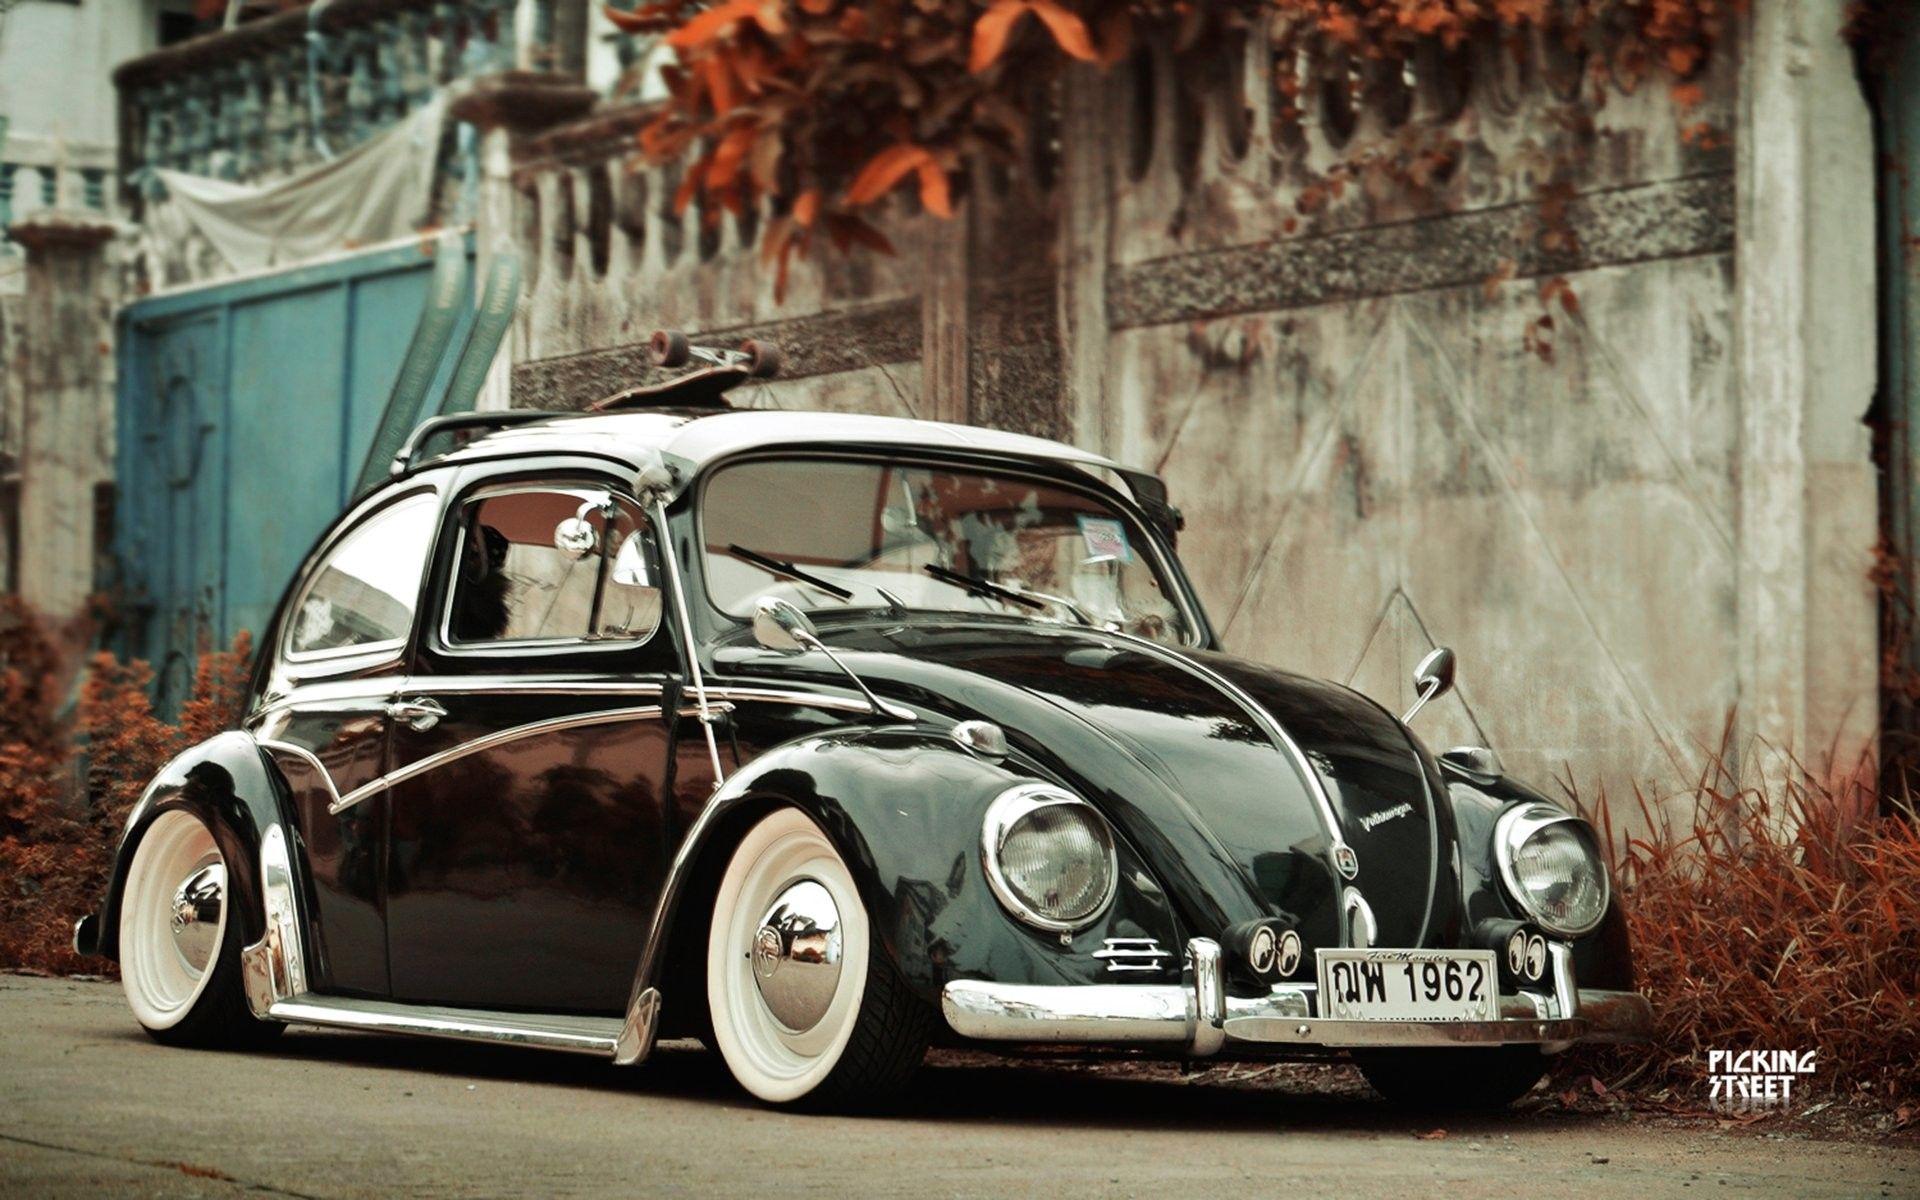 Old Volkswagen Wallpapers - Top Free Old Volkswagen Backgrounds